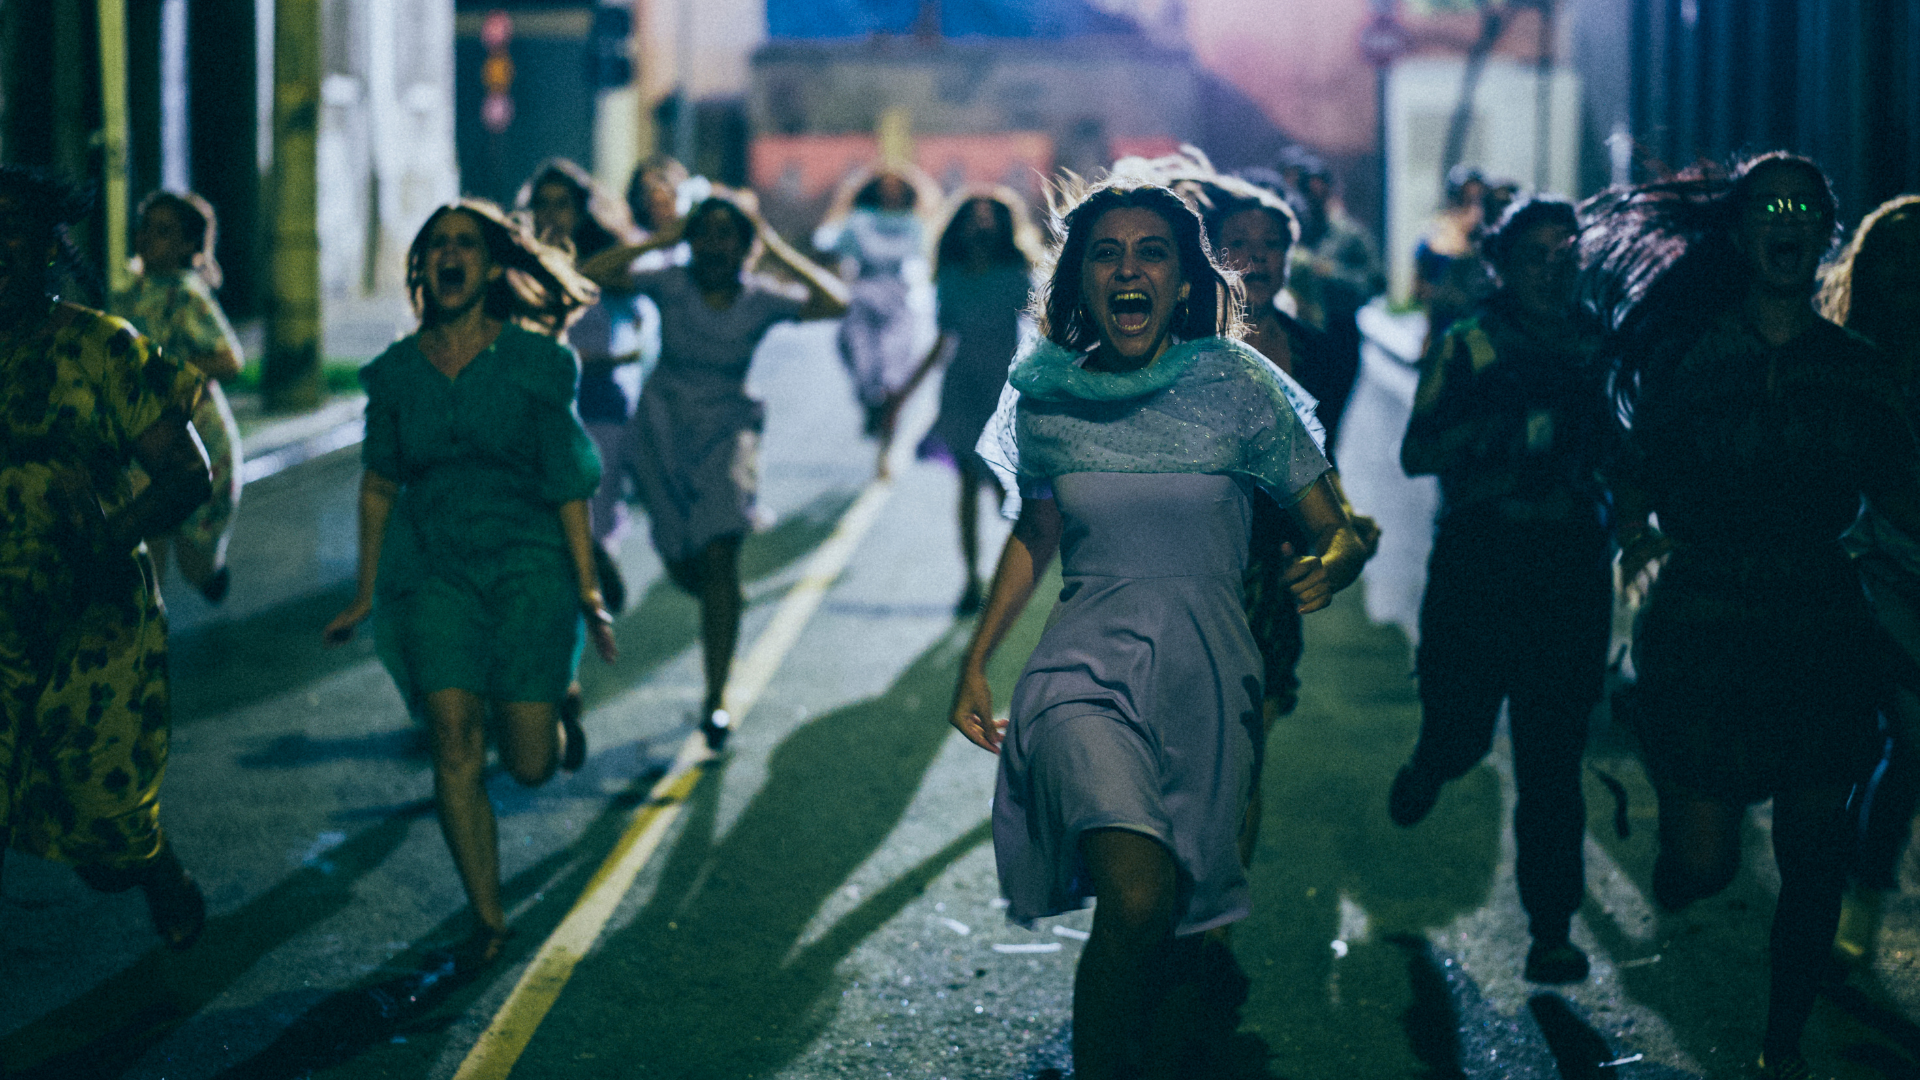 Cena do filme Medusa. A imagem mostra um grupo de mulheres correndo e gritando na rua, a noite.